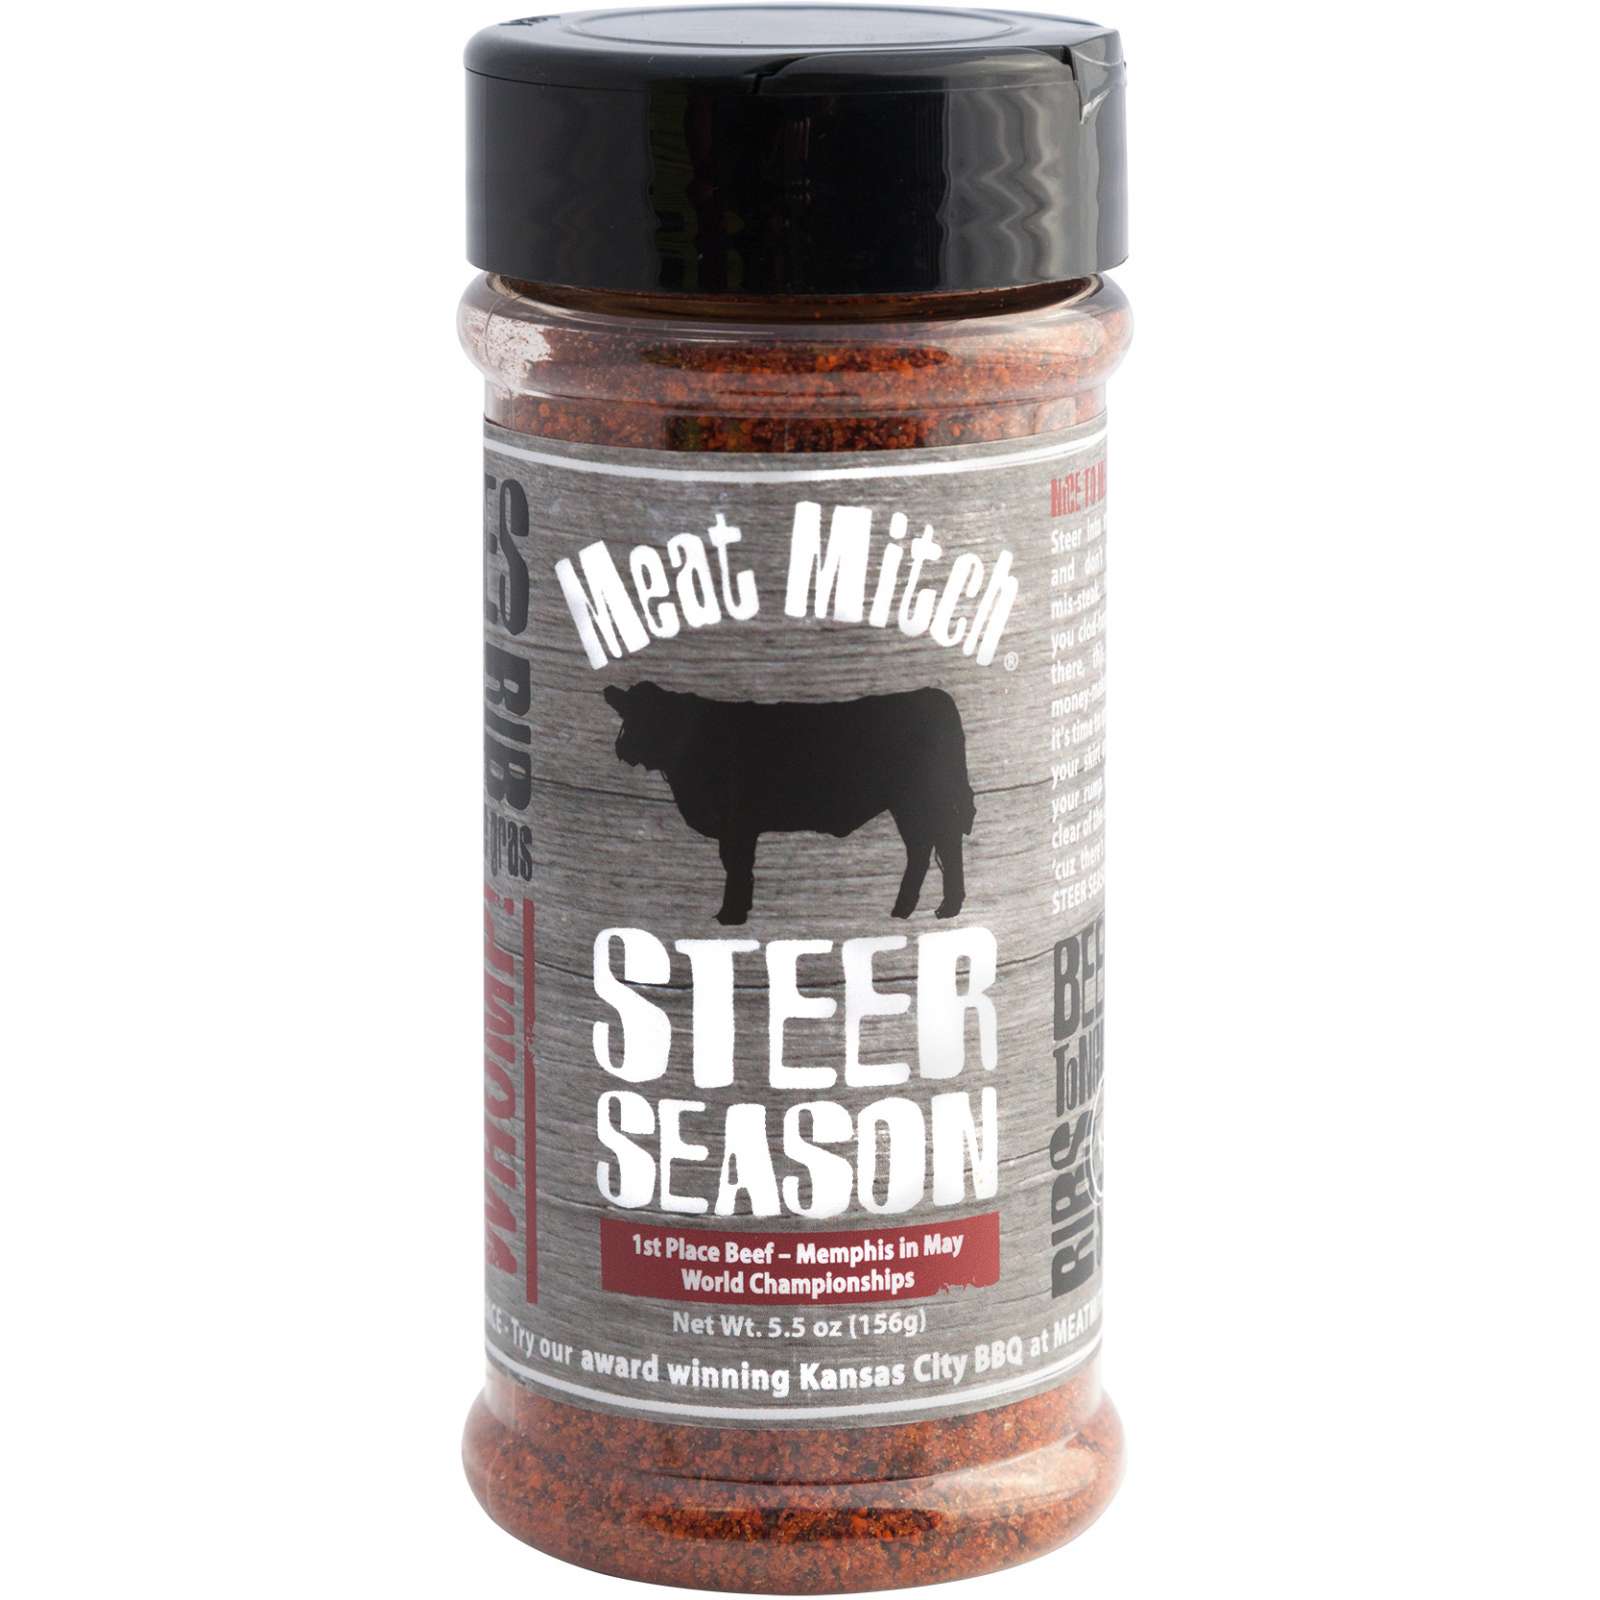 Meat Mitch Steer Seasoning BBQ Steakgewürz, 176 g Gewürzzubereitung